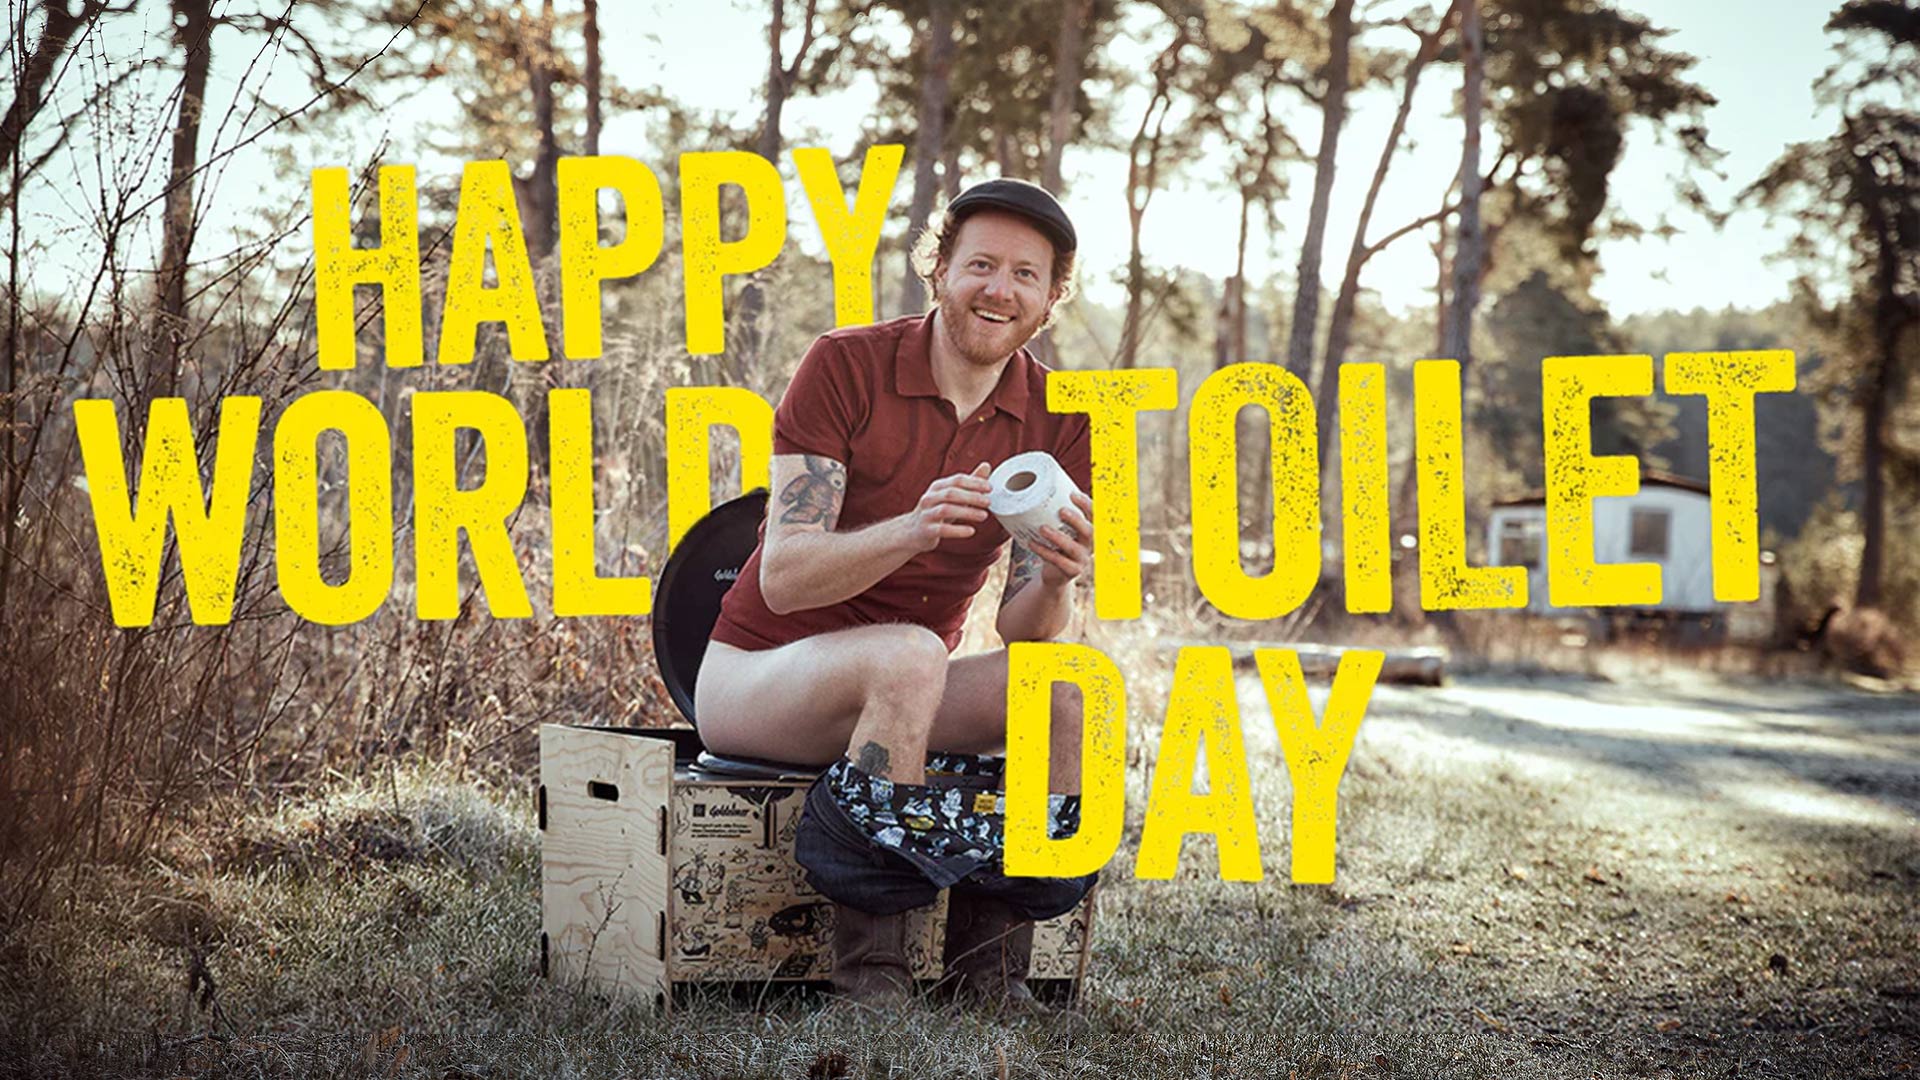 Mann sitzt lachend auf Trockentoilette, großer Schriftzug "Happy World Toilet Day"